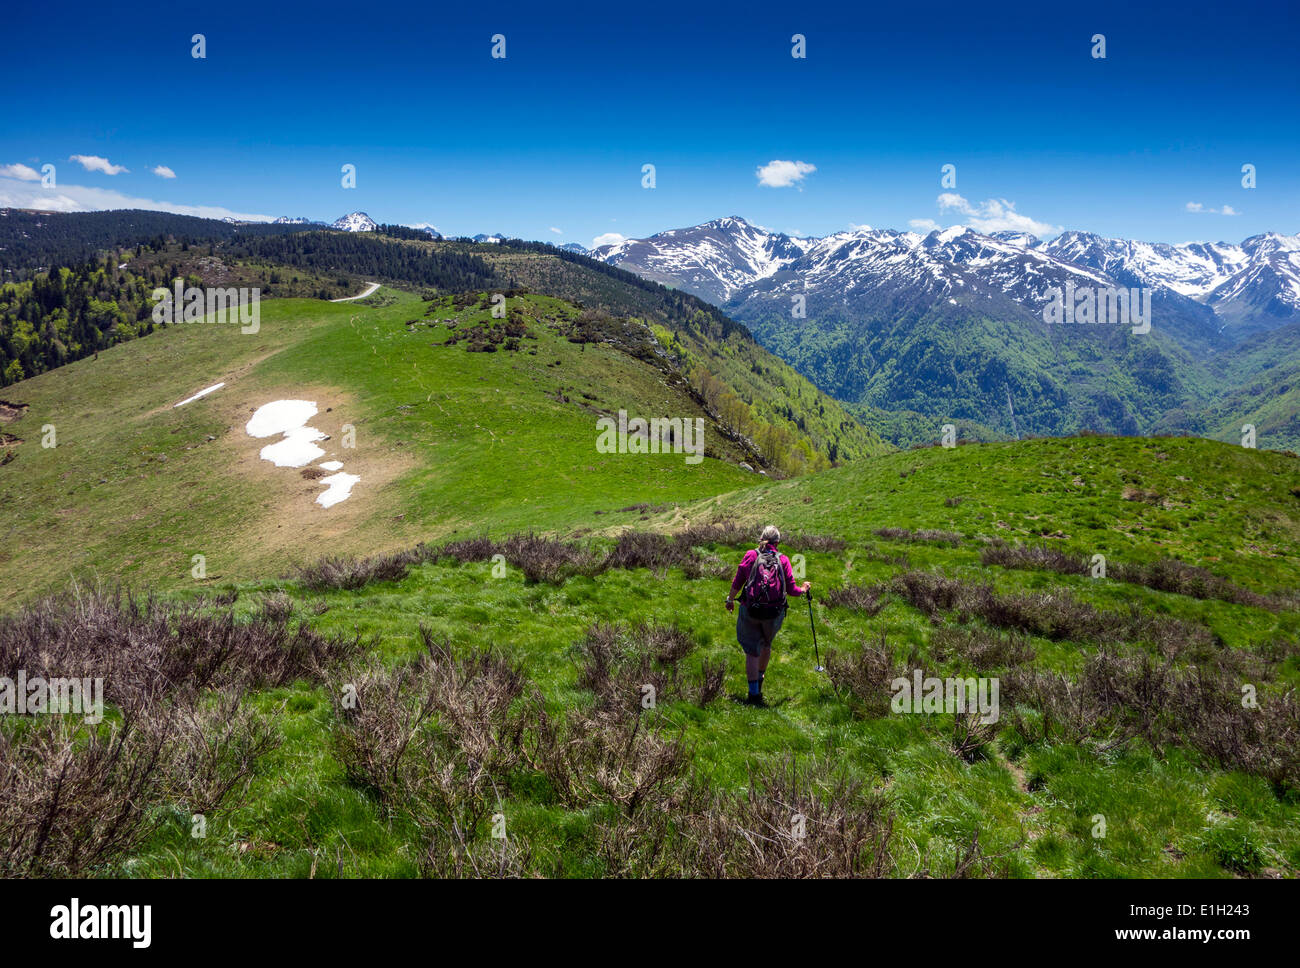 Weibliche Walker in rotes Top, Plateau de Beille, französischen Pyrenäen, entfernten schneebedeckten Berge, blauer Himmel, Sommer, Stockfoto